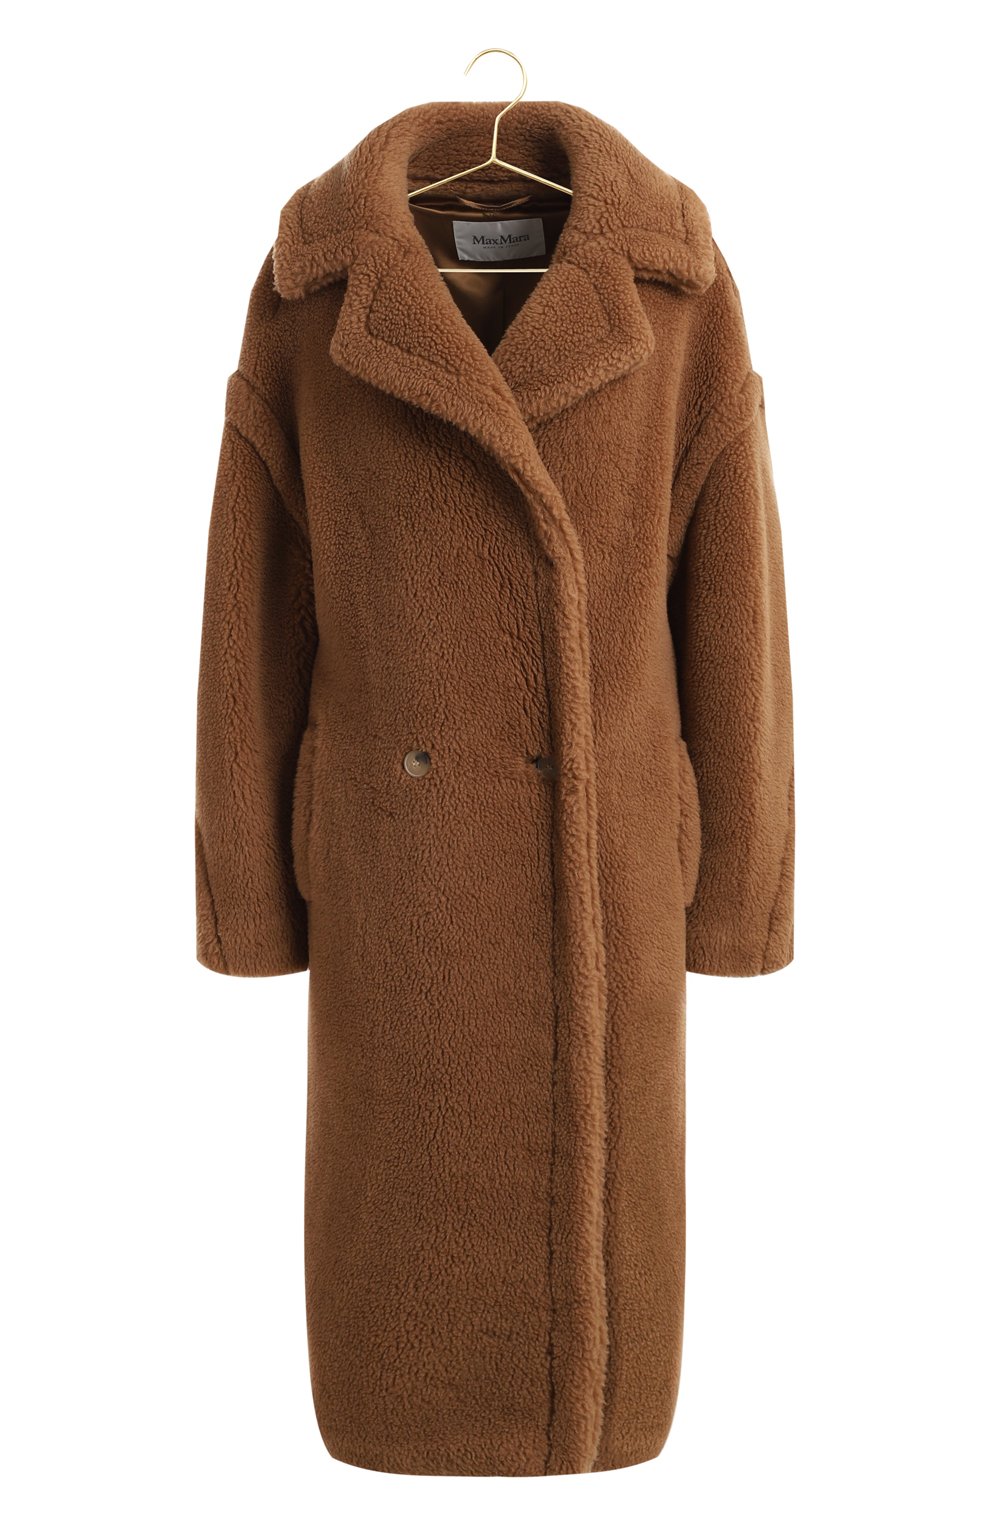 Пальто из шерсти и шелка | Max Mara | Коричневый - 1